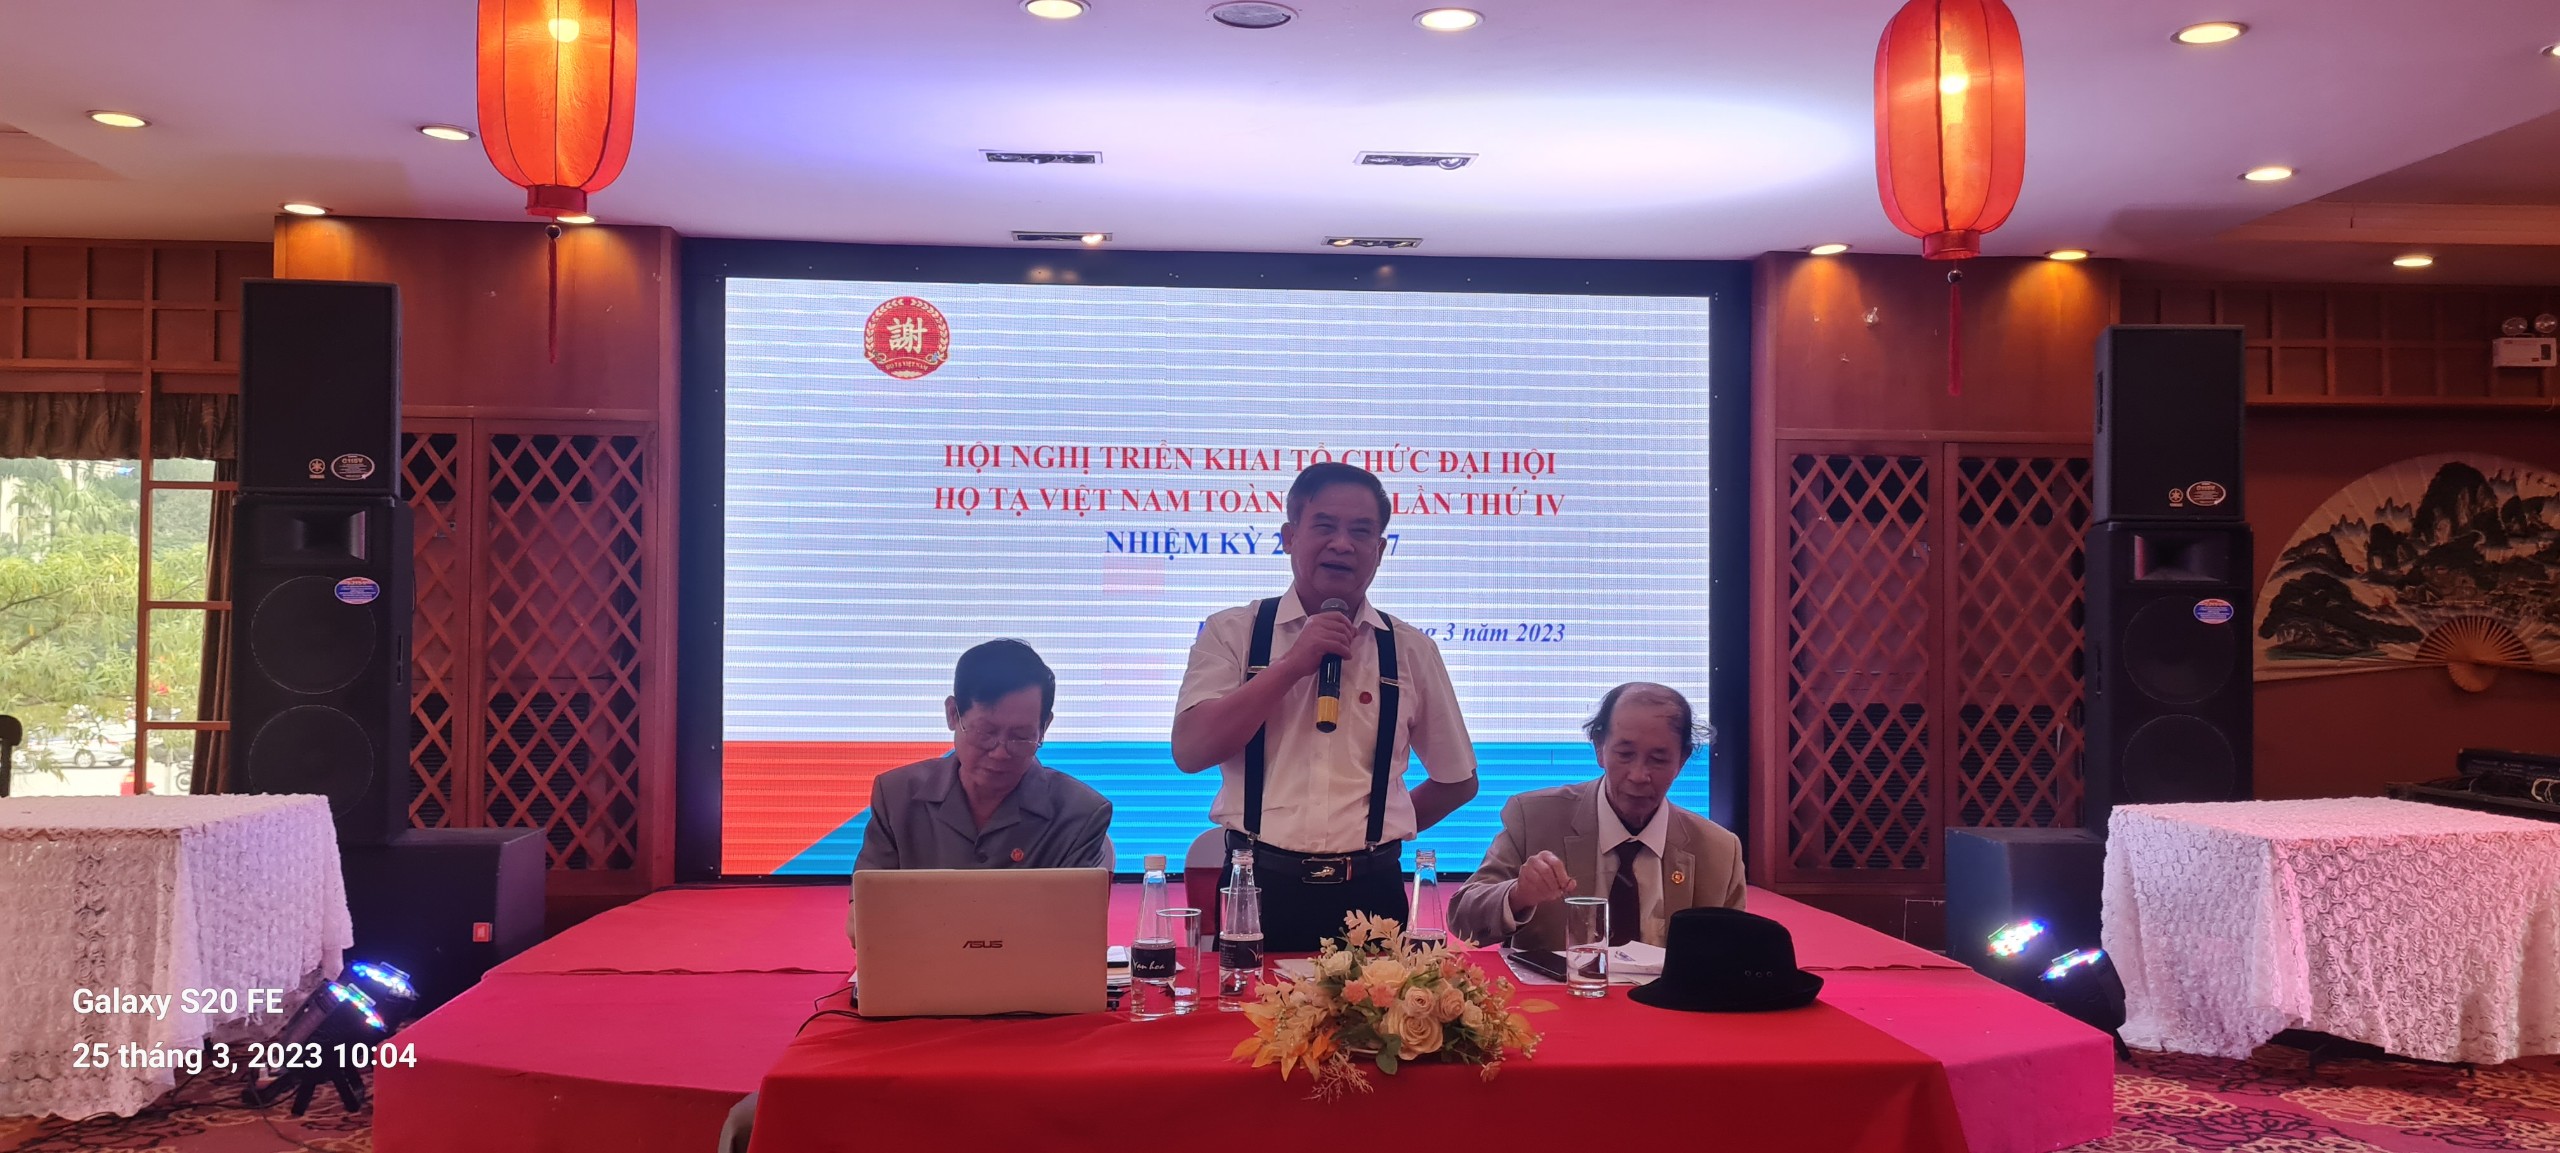 Hội nghị đánh giá công tác đầu năm 2023, và triển khai công tác chuẩn bị cho Đại hội Hội đồng họ Tạ Việt Nam